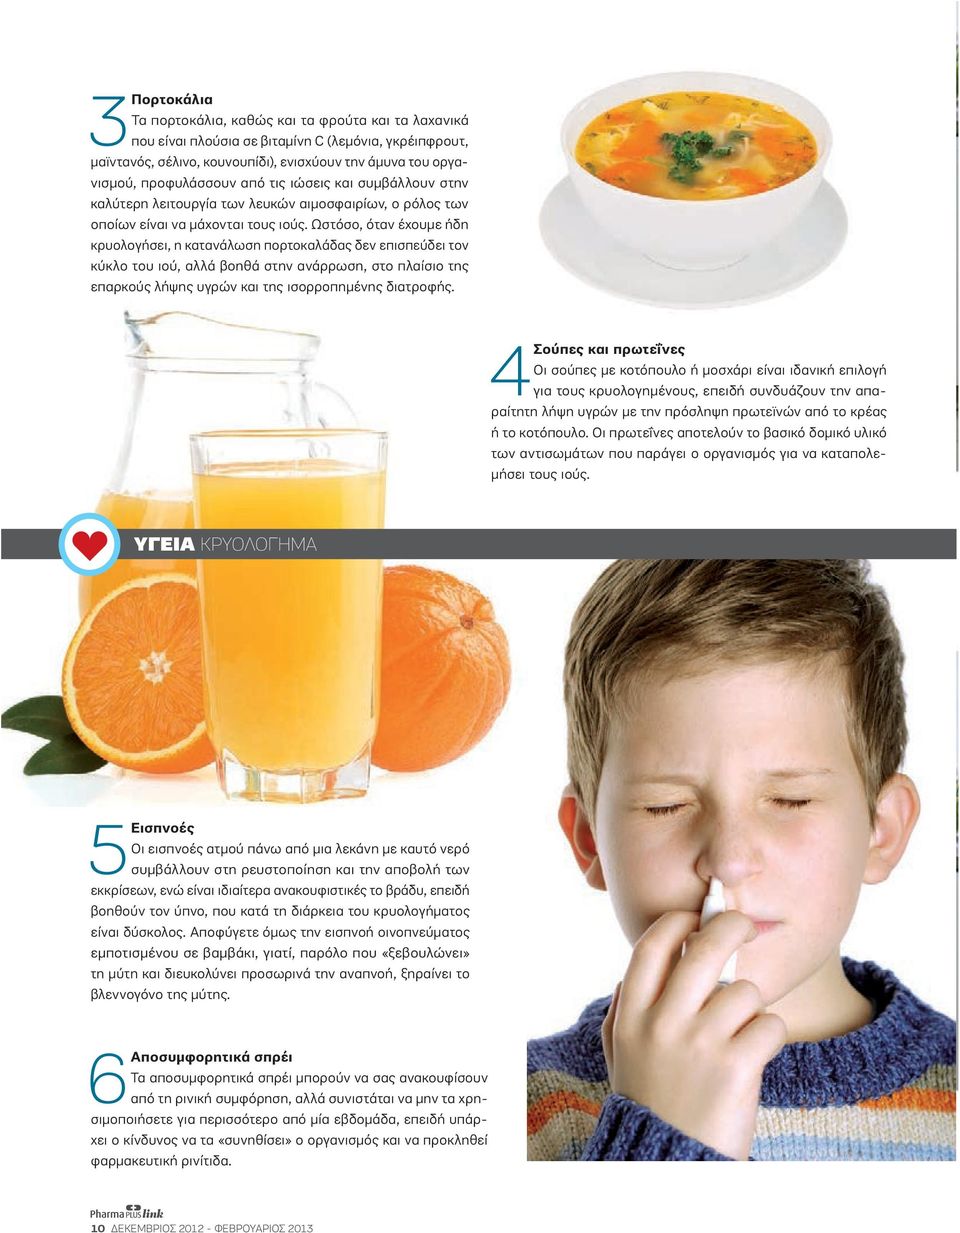 Ωστόσο, όταν έχουµε ήδη κρυολογήσει, η κατανάλωση πορτοκαλάδας δεν επισπεύδει τον κύκλο του ιού, αλλά βοηθά στην ανάρρωση, στο πλαίσιο της επαρκούς λήψης υγρών και της ισορροπηµένης διατροφής.